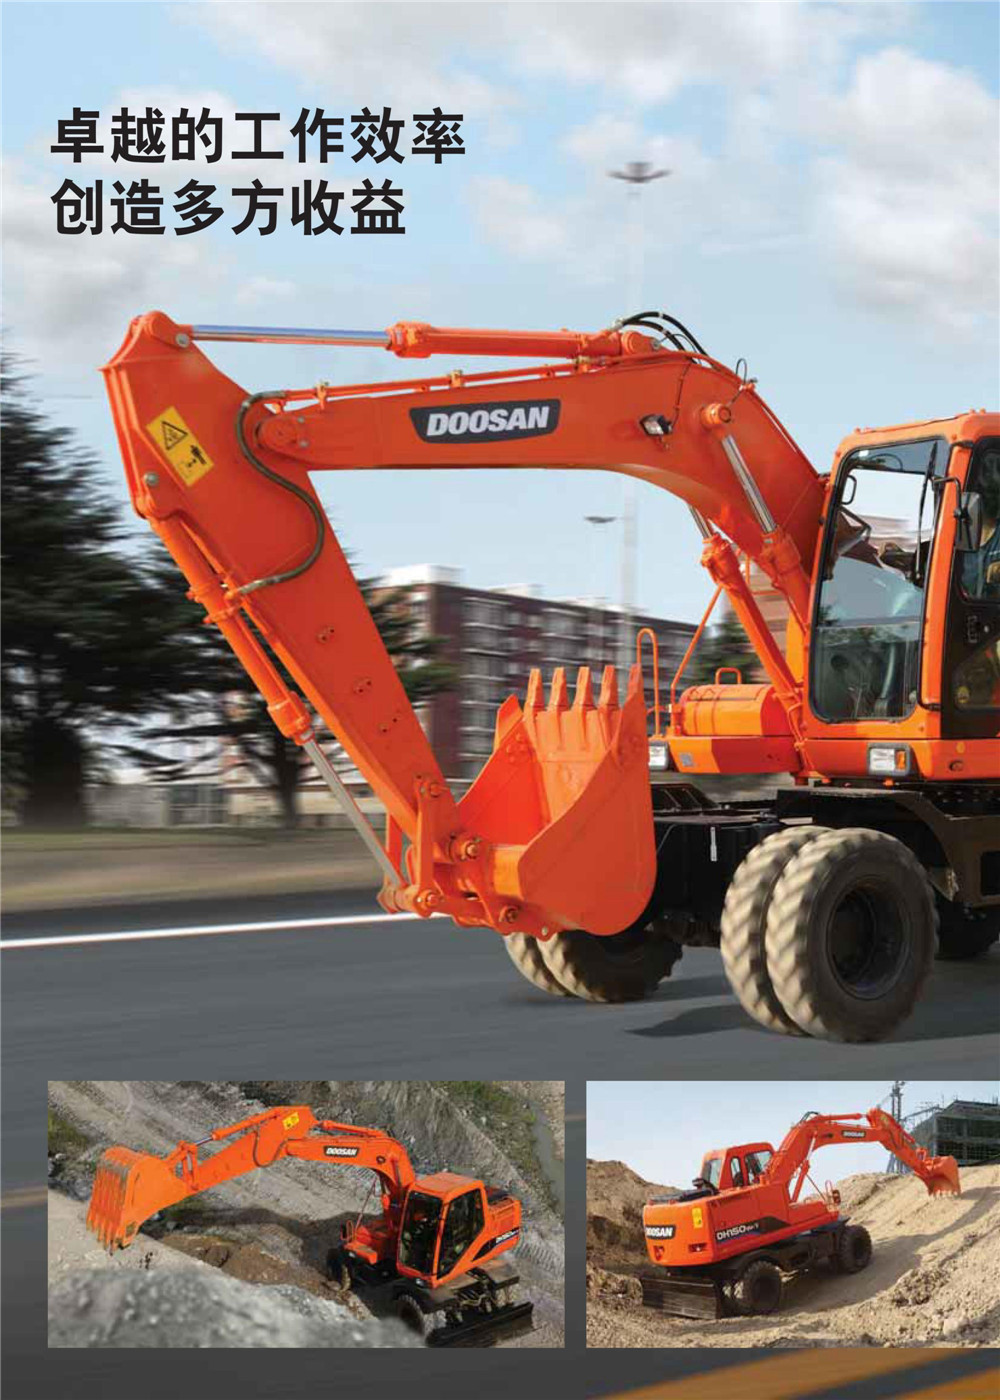 斗山轮式挖掘机dh150w-7-258.com企业服务平台